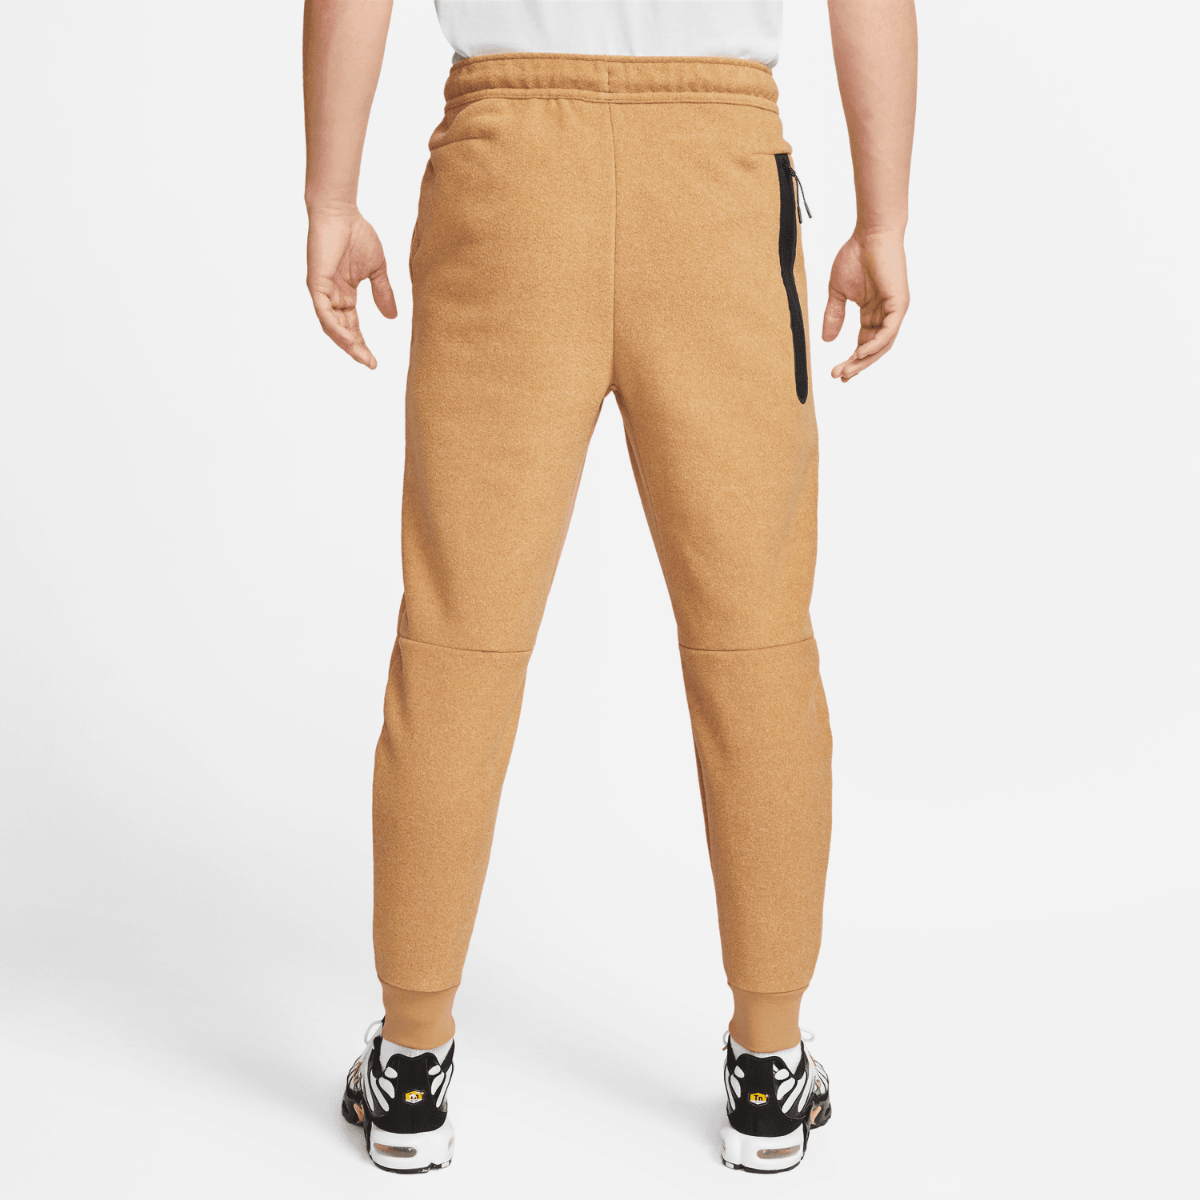 Pantalon Sportswear Nike Tech Fleece - Beige/Noir